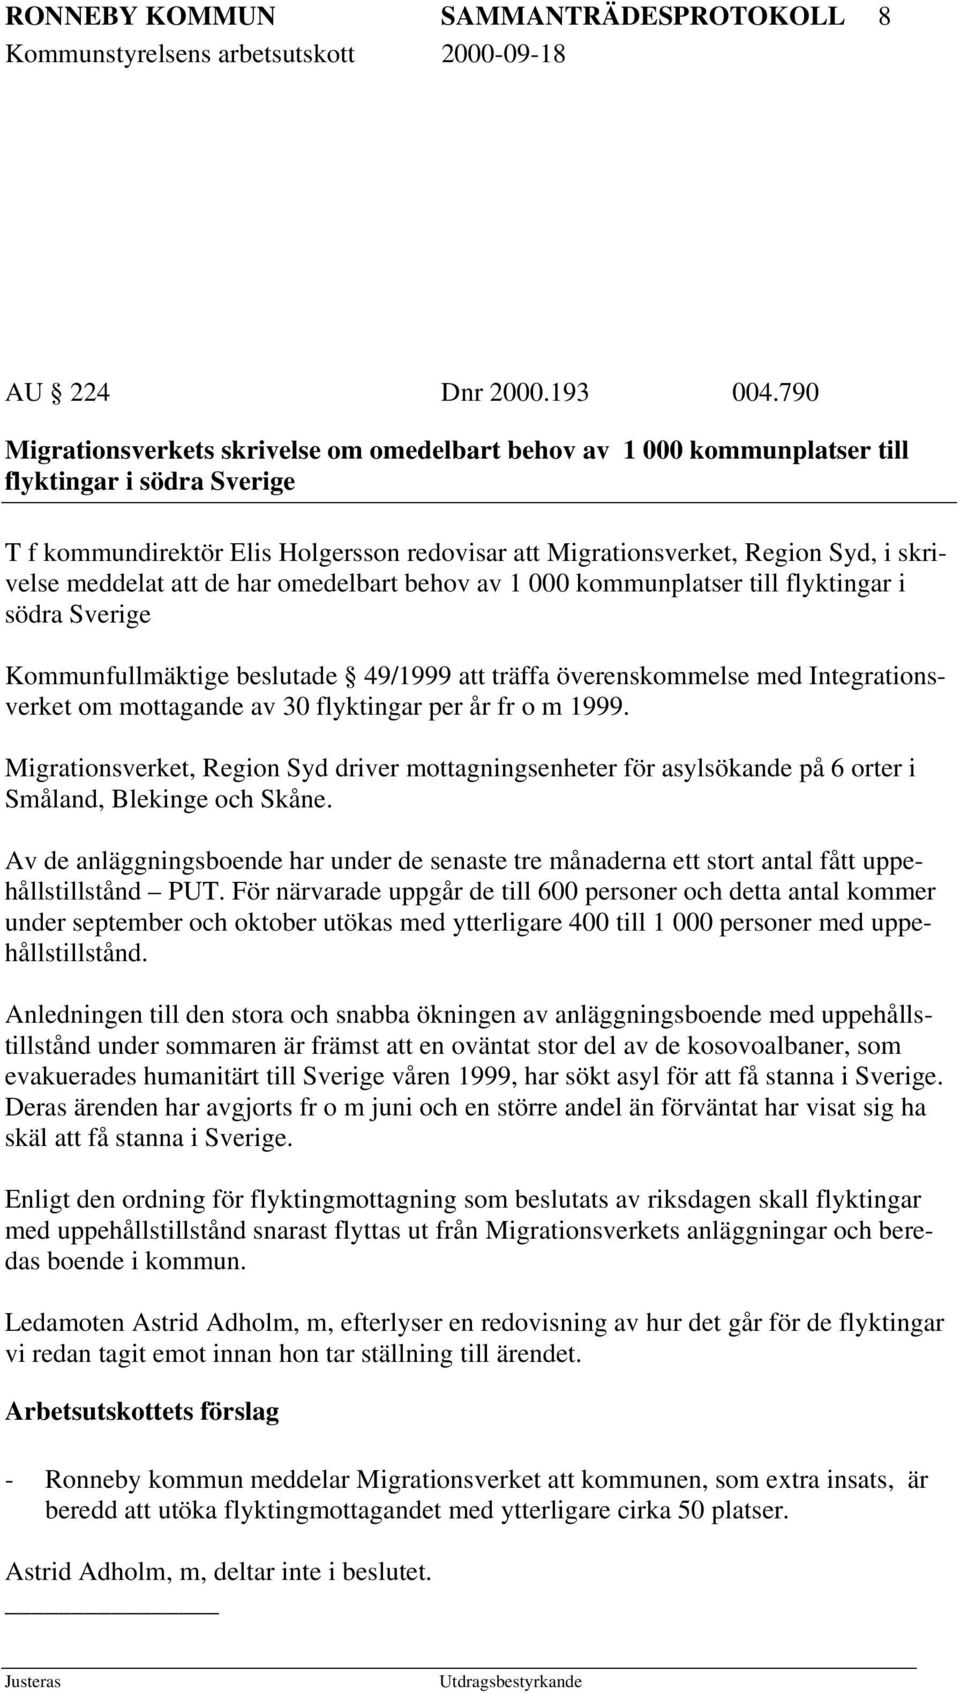 meddelat att de har omedelbart behov av 1 000 kommunplatser till flyktingar i södra Sverige Kommunfullmäktige beslutade 49/1999 att träffa överenskommelse med Integrationsverket om mottagande av 30